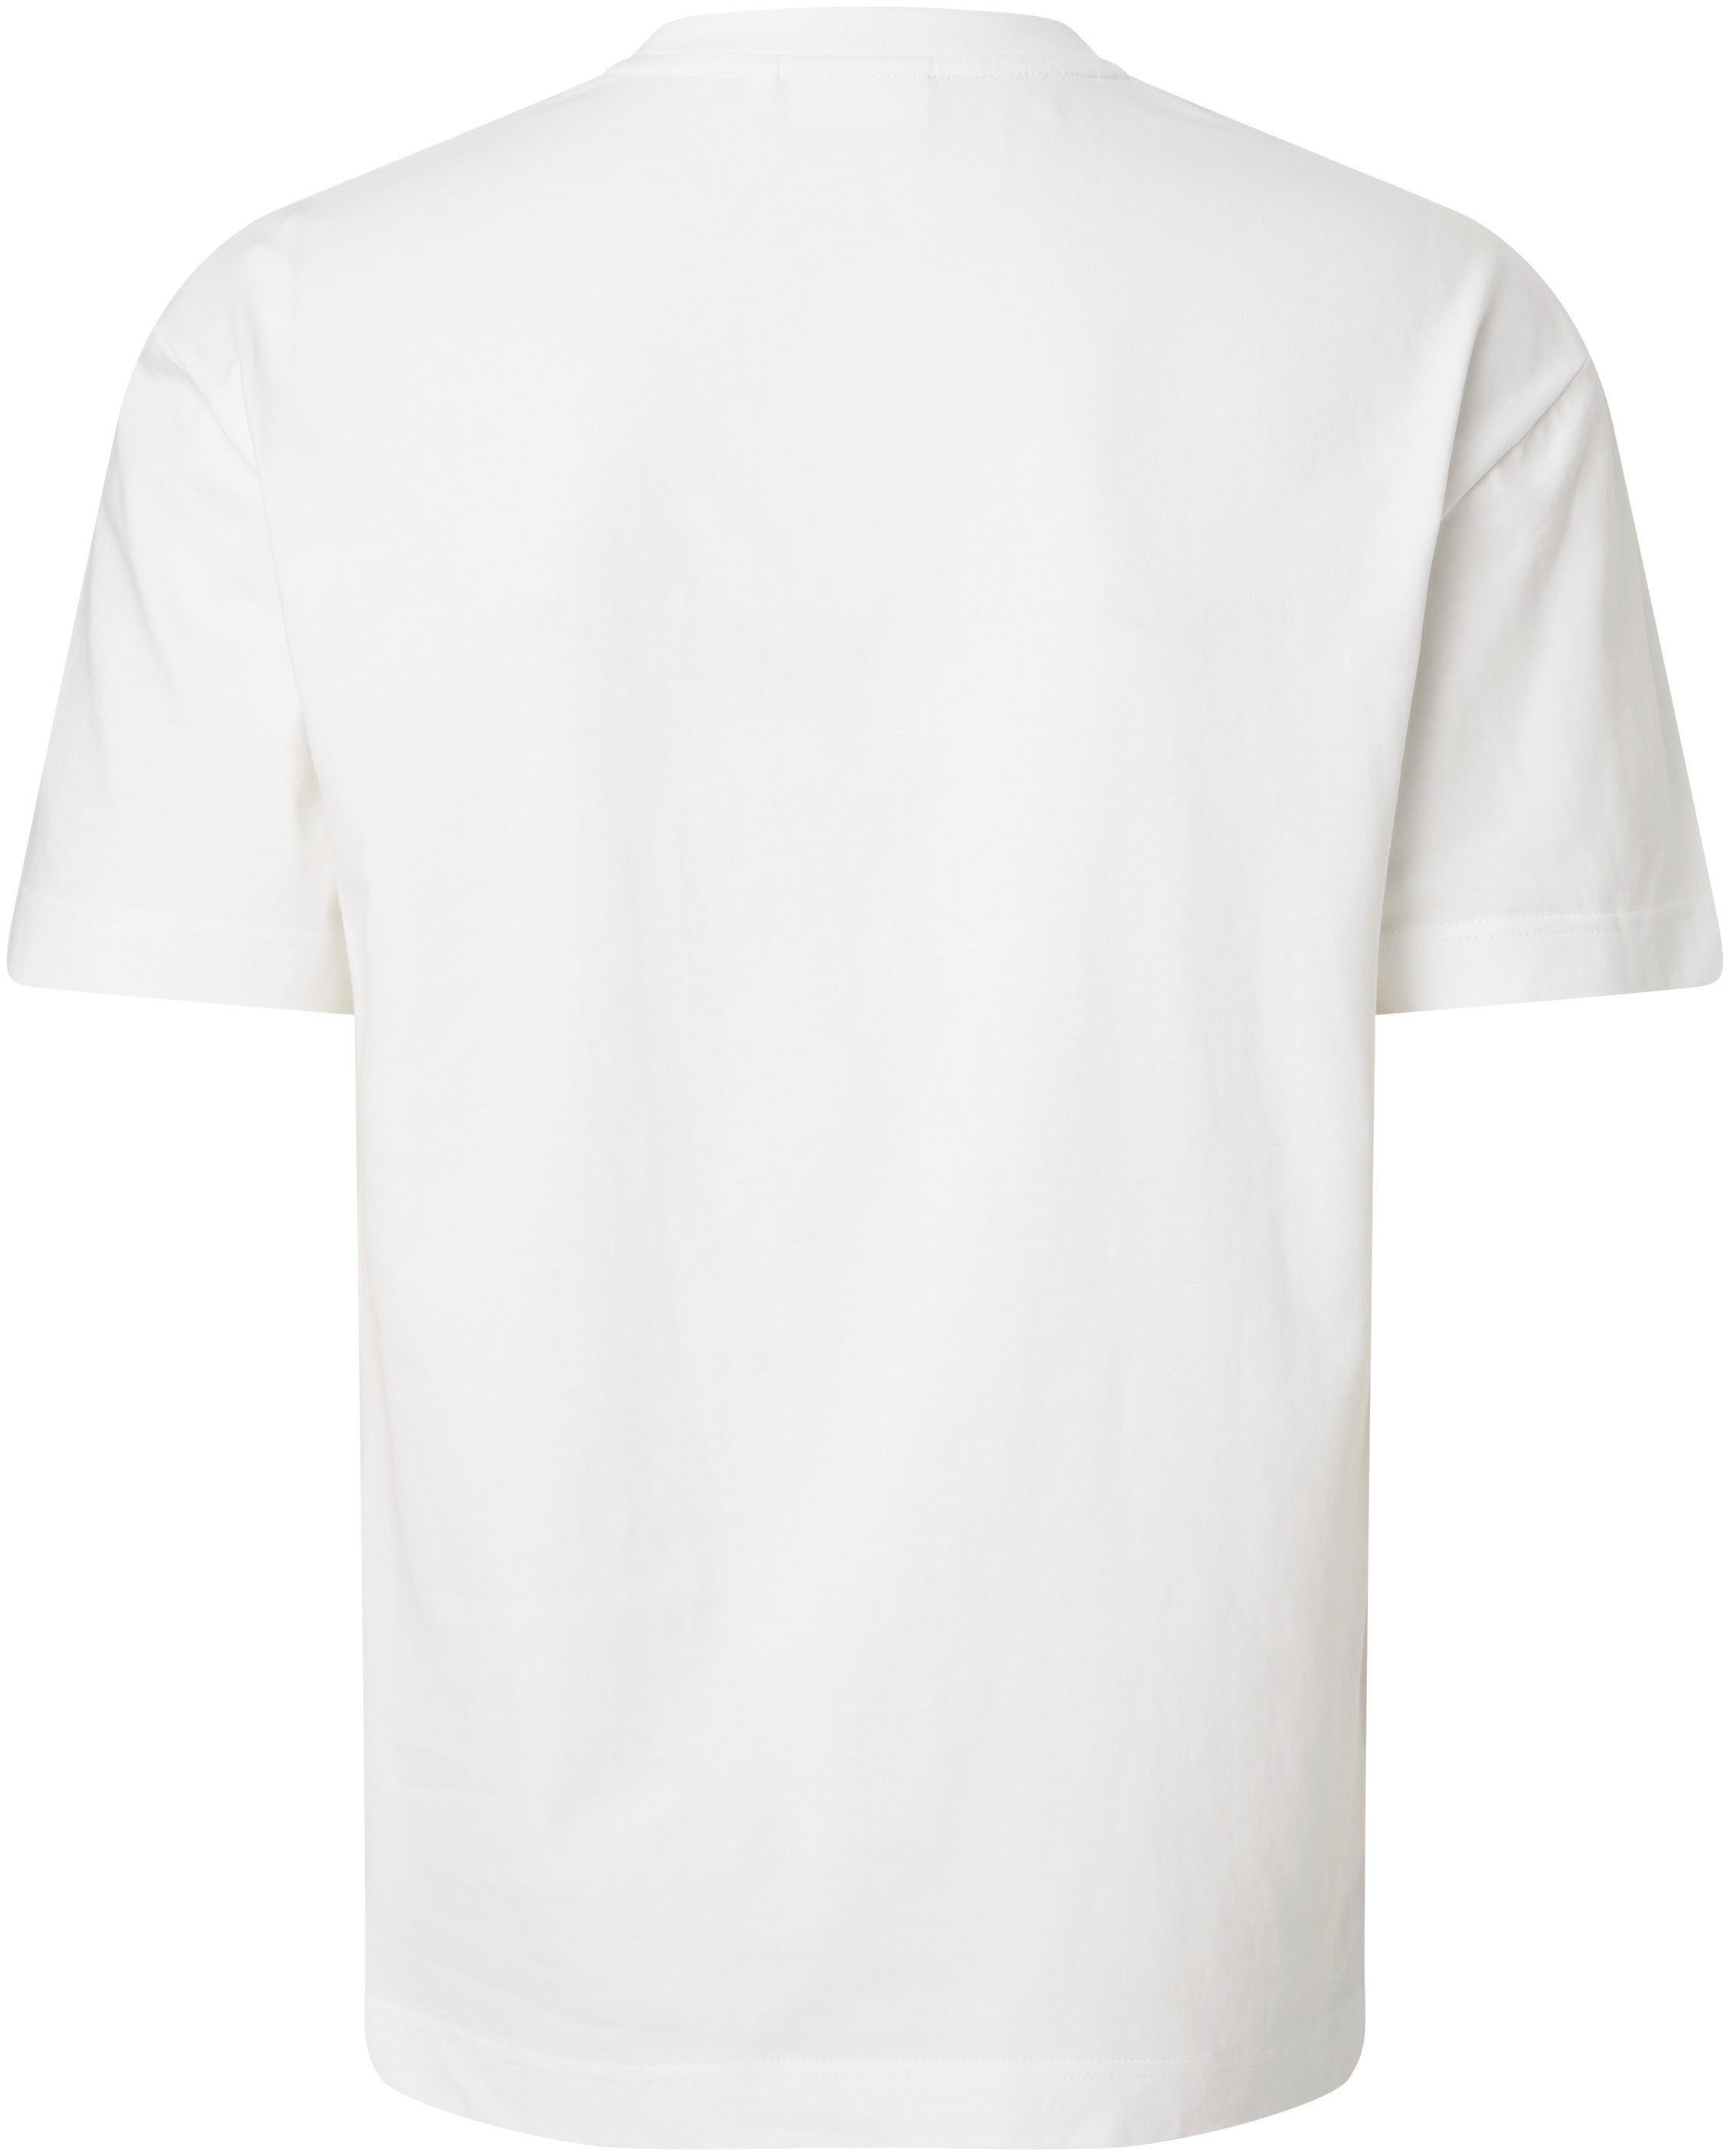 auf Klein der T-SHIRT T-Shirt weiß mit Brust COTTON COMFORT FIT Klein Calvin Calvin Logo